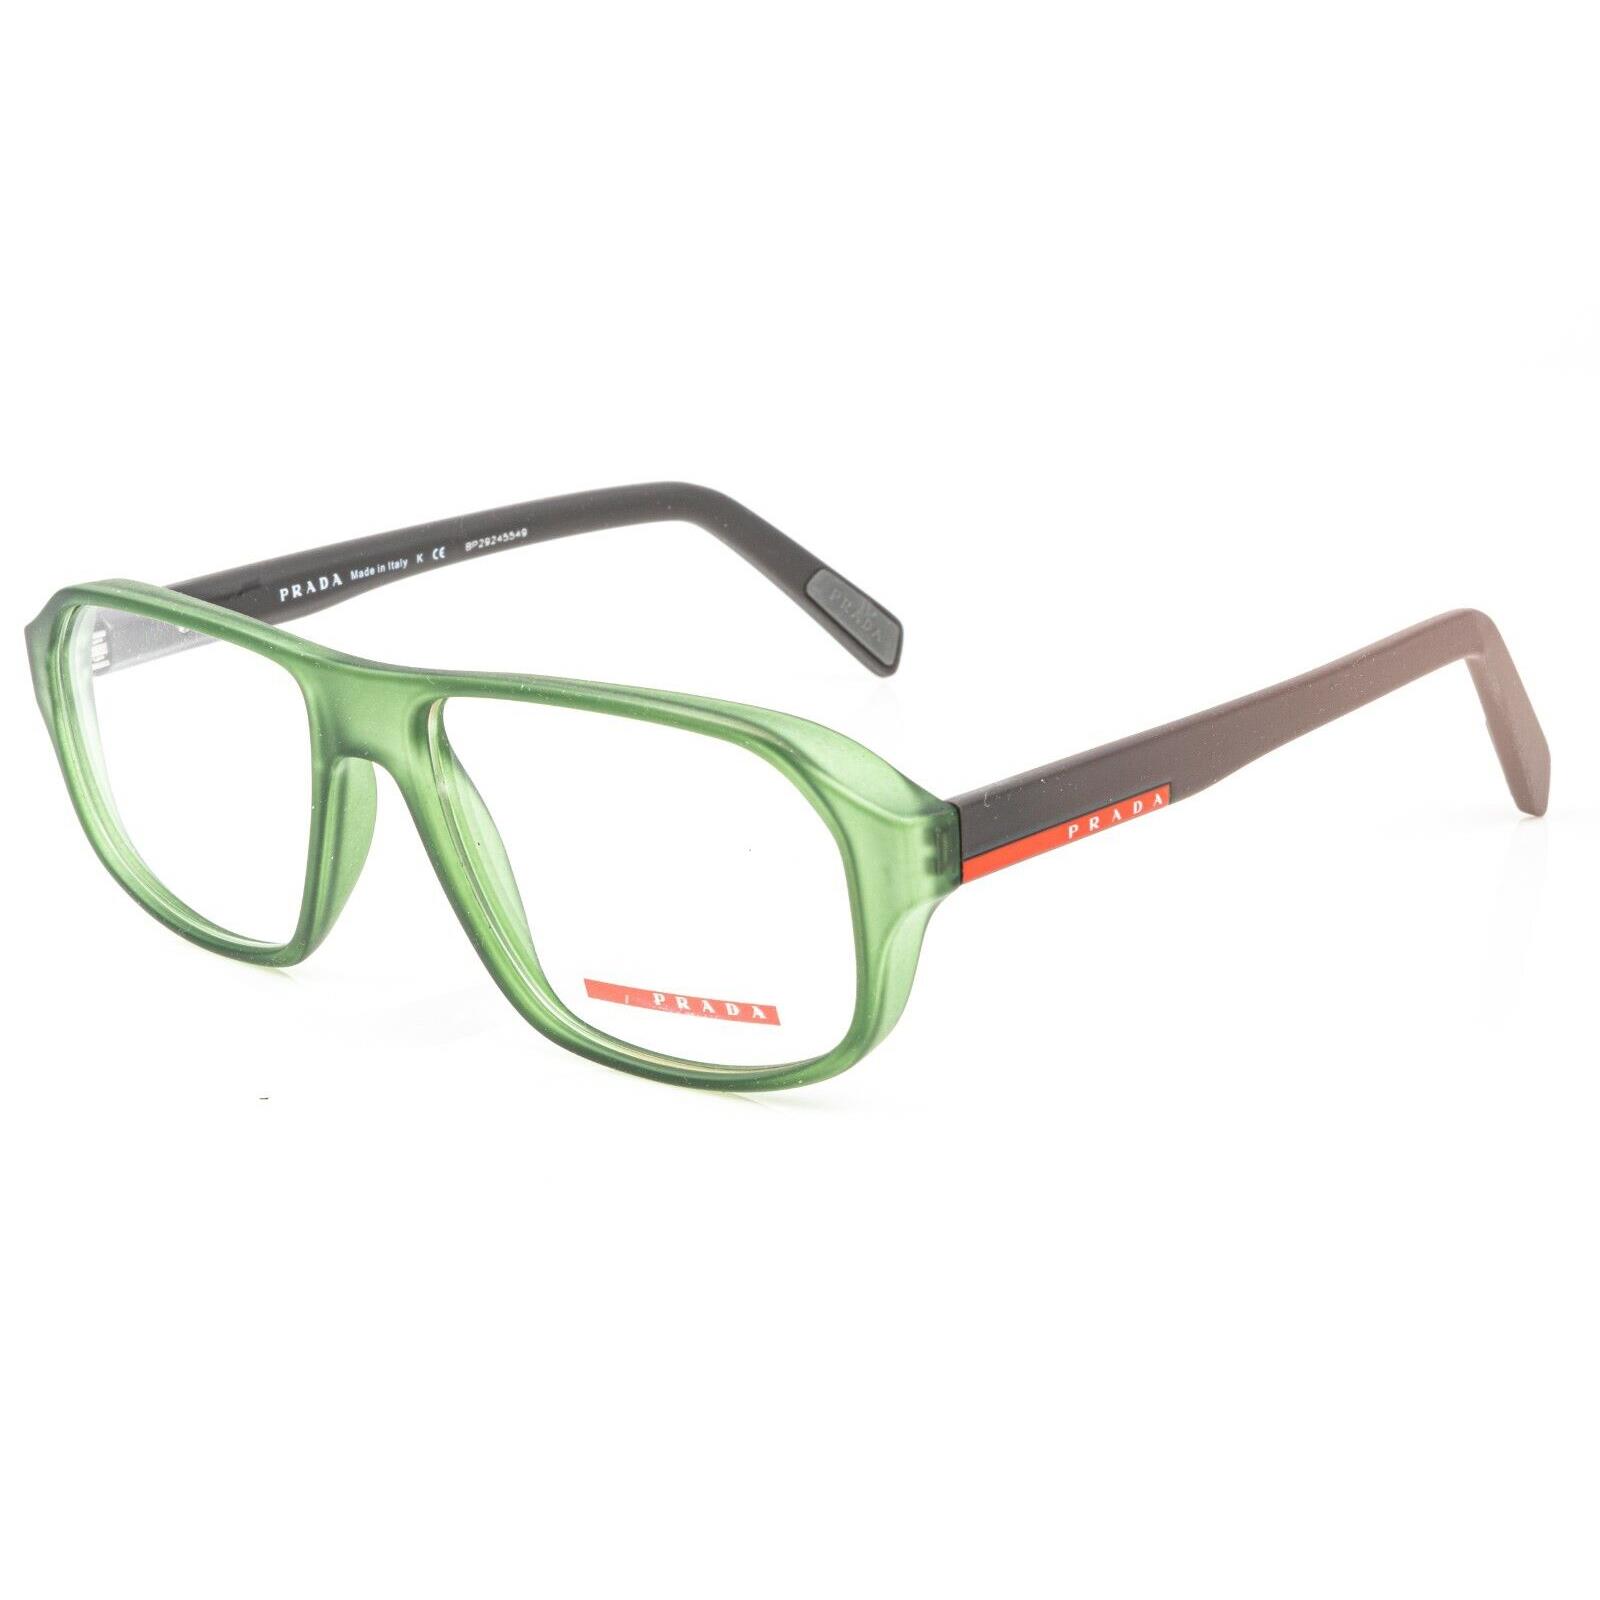 Prada Vps 05G Ufk 1O1 Green Eyeglasses Frame RX 55-16 VPS05G - Green Frame